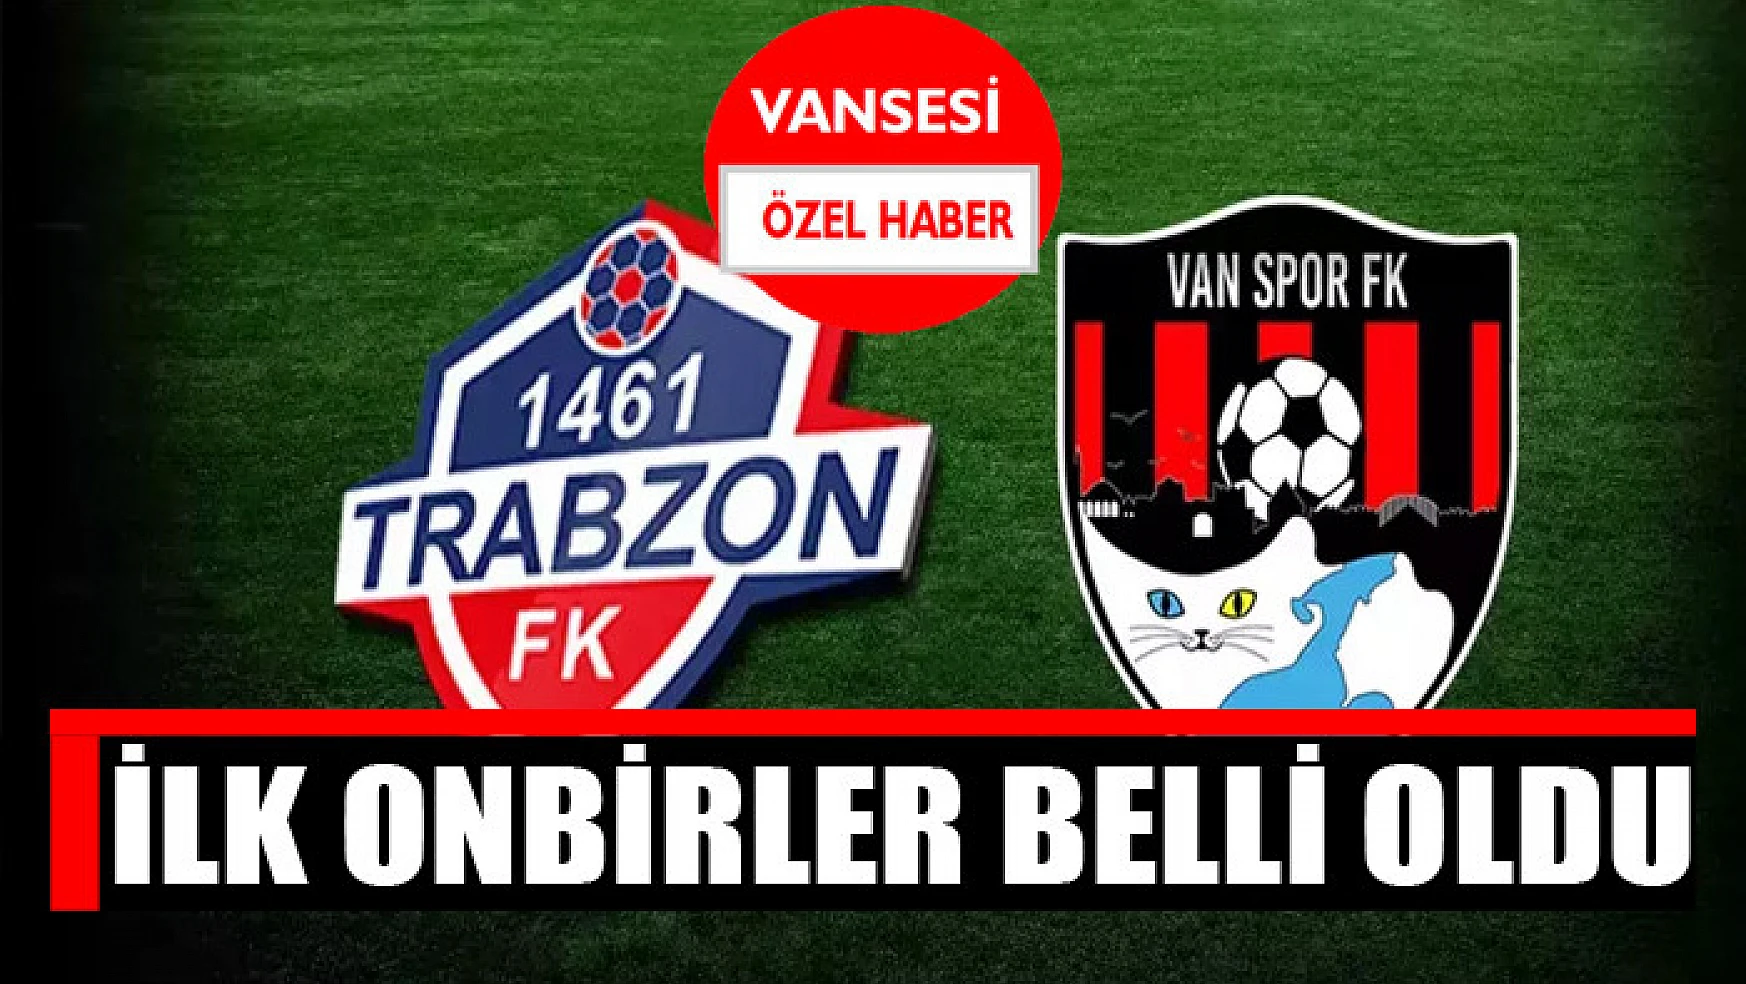 1461 Trabzonspor-Vanspor maçının ilk onbirleri belli oldu